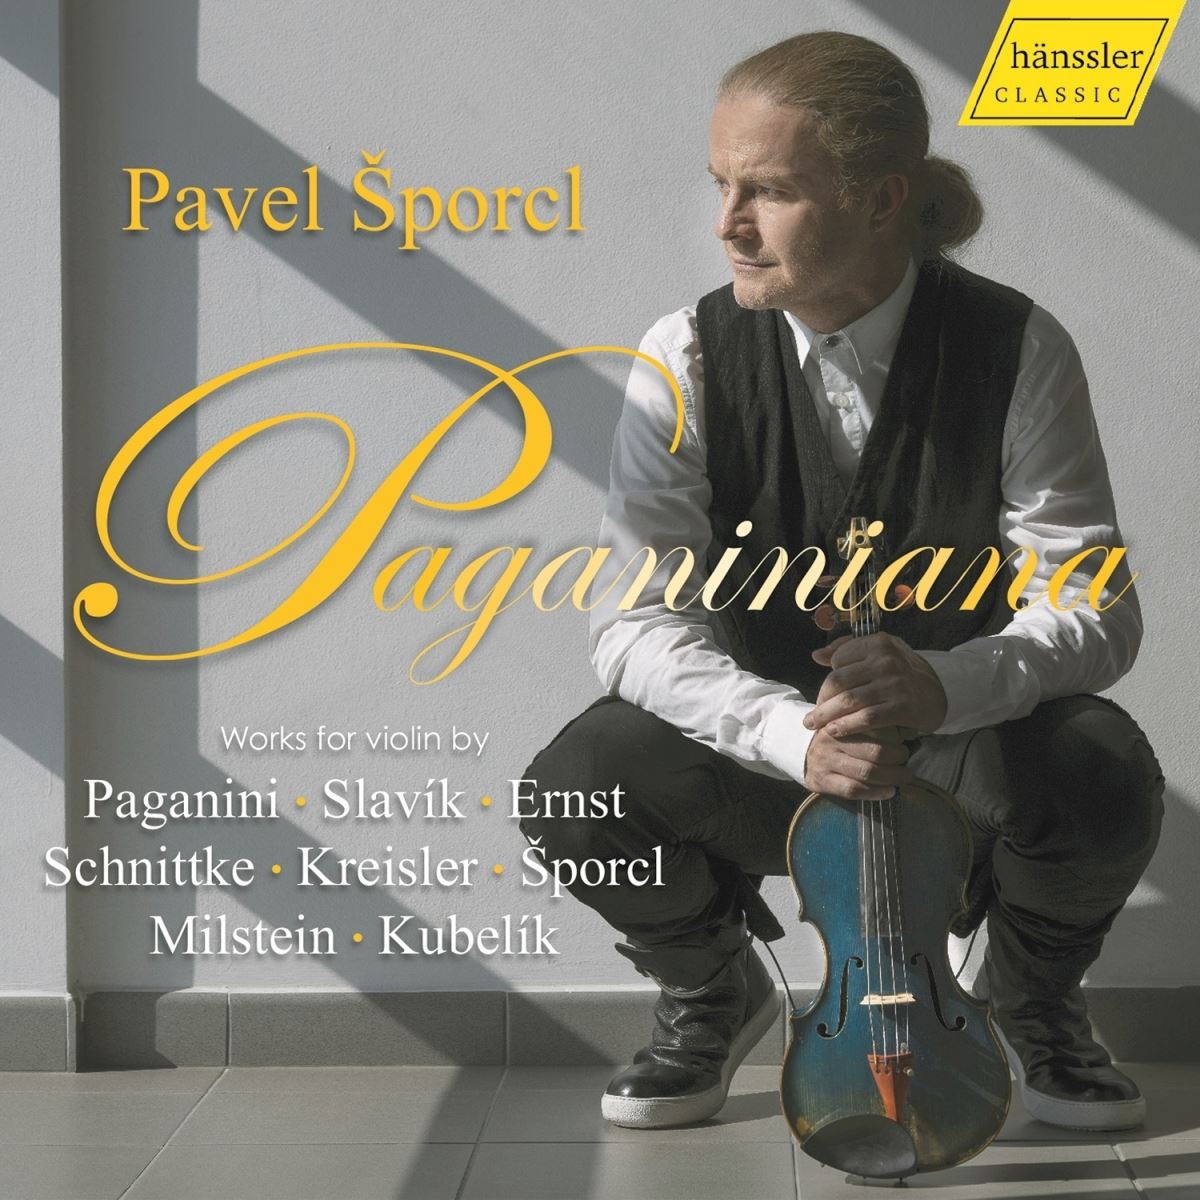 Když muzikant nehraje, jako by nežil, říká houslista Pavel Šporcl.